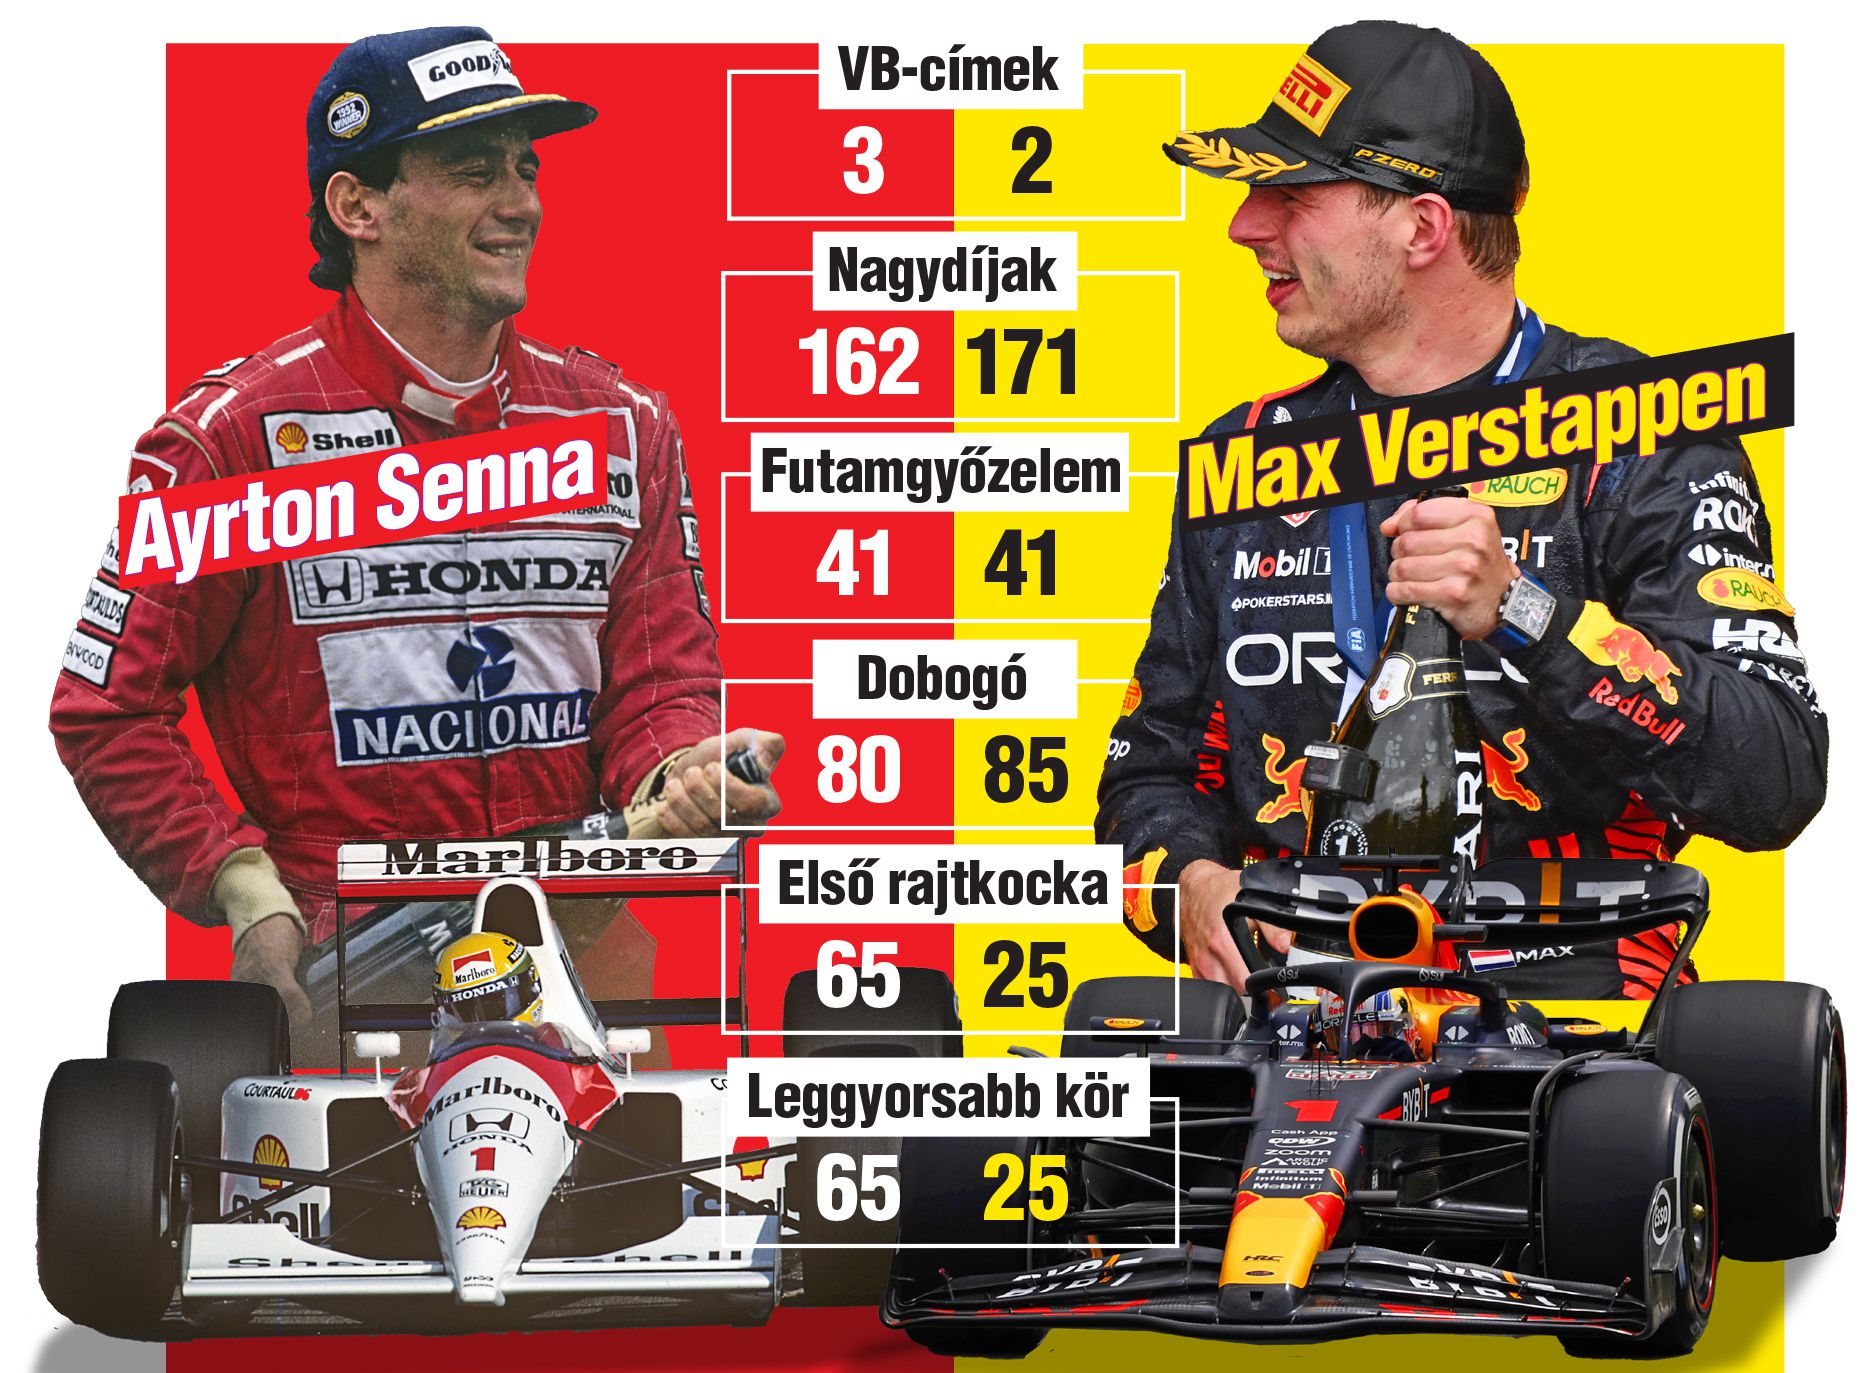 Senna a vb-címek tekintetében még Verstappen előtt jár, de valószínűleg már nem sokáig/Blikk-illusztráció